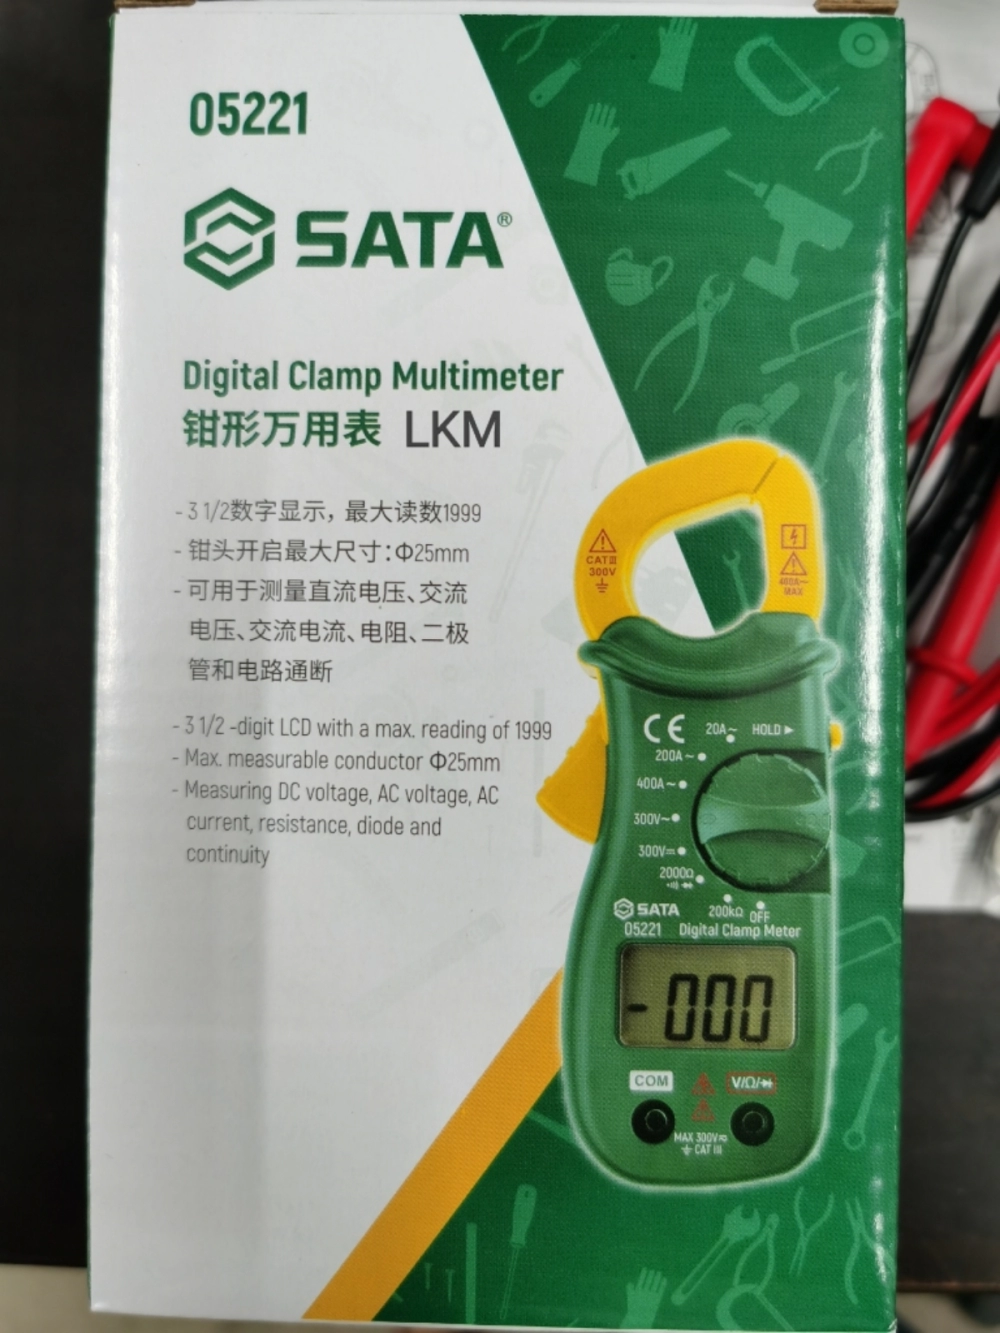 Sata Digital Clamp Multimeter 05221